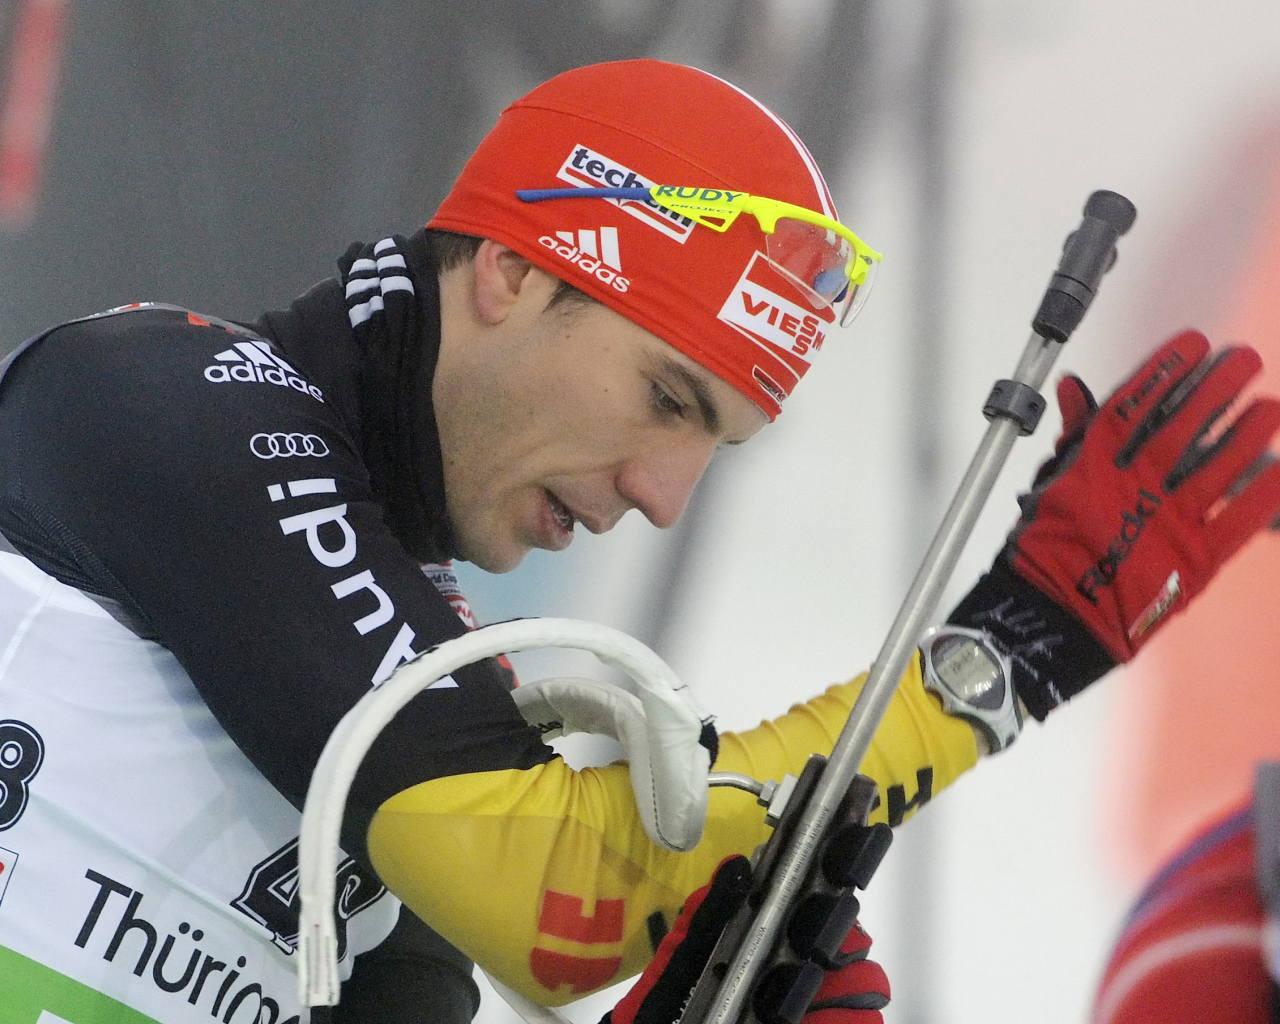 Обладатель серебряной медали немецкий биатлонист Арнд Пайффер на олимпиаде в Сочи